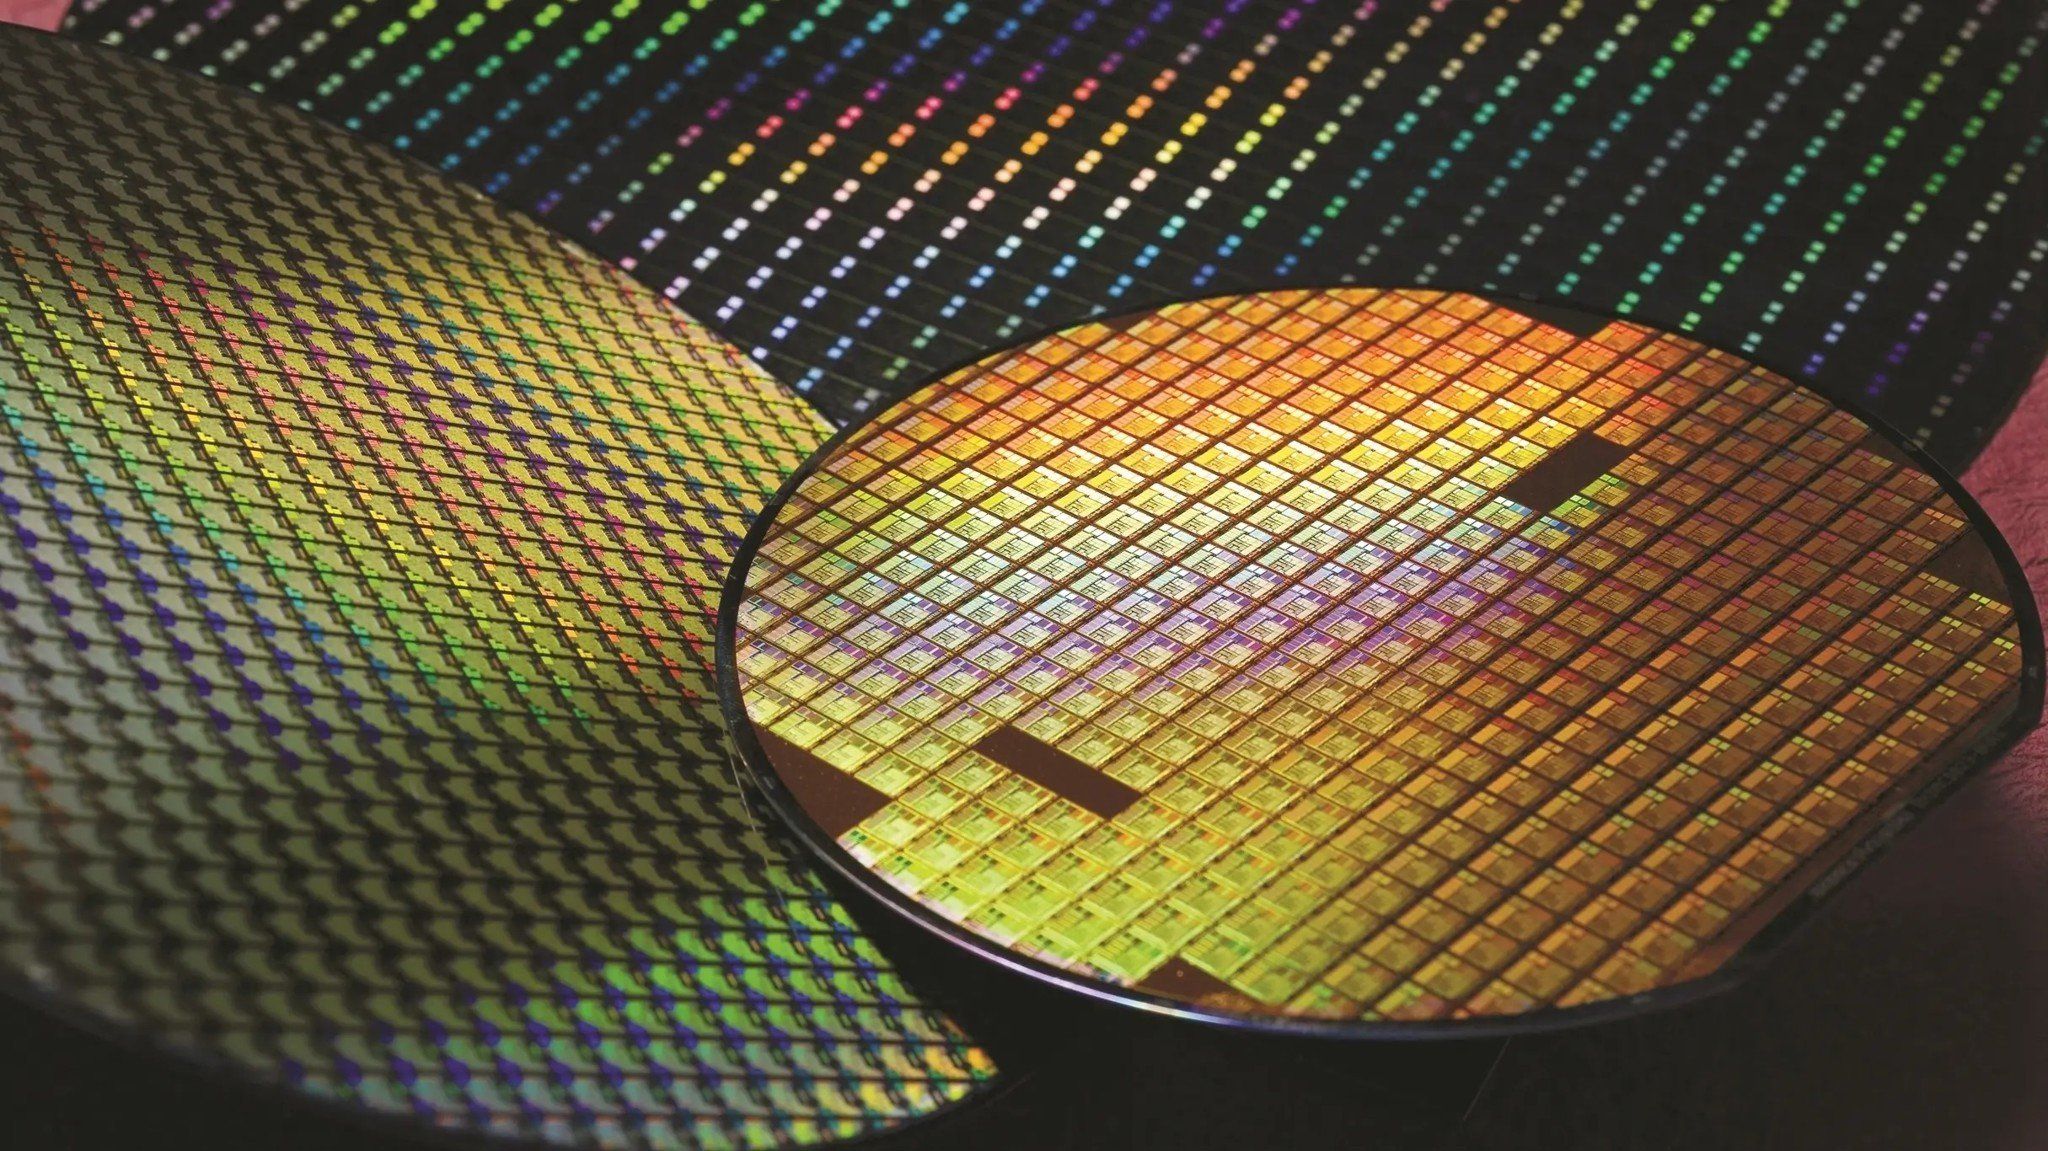 TSMC thôi chưa đủ, Intel có thể “nhờ vả” tiếp Samsung để sản xuất chip